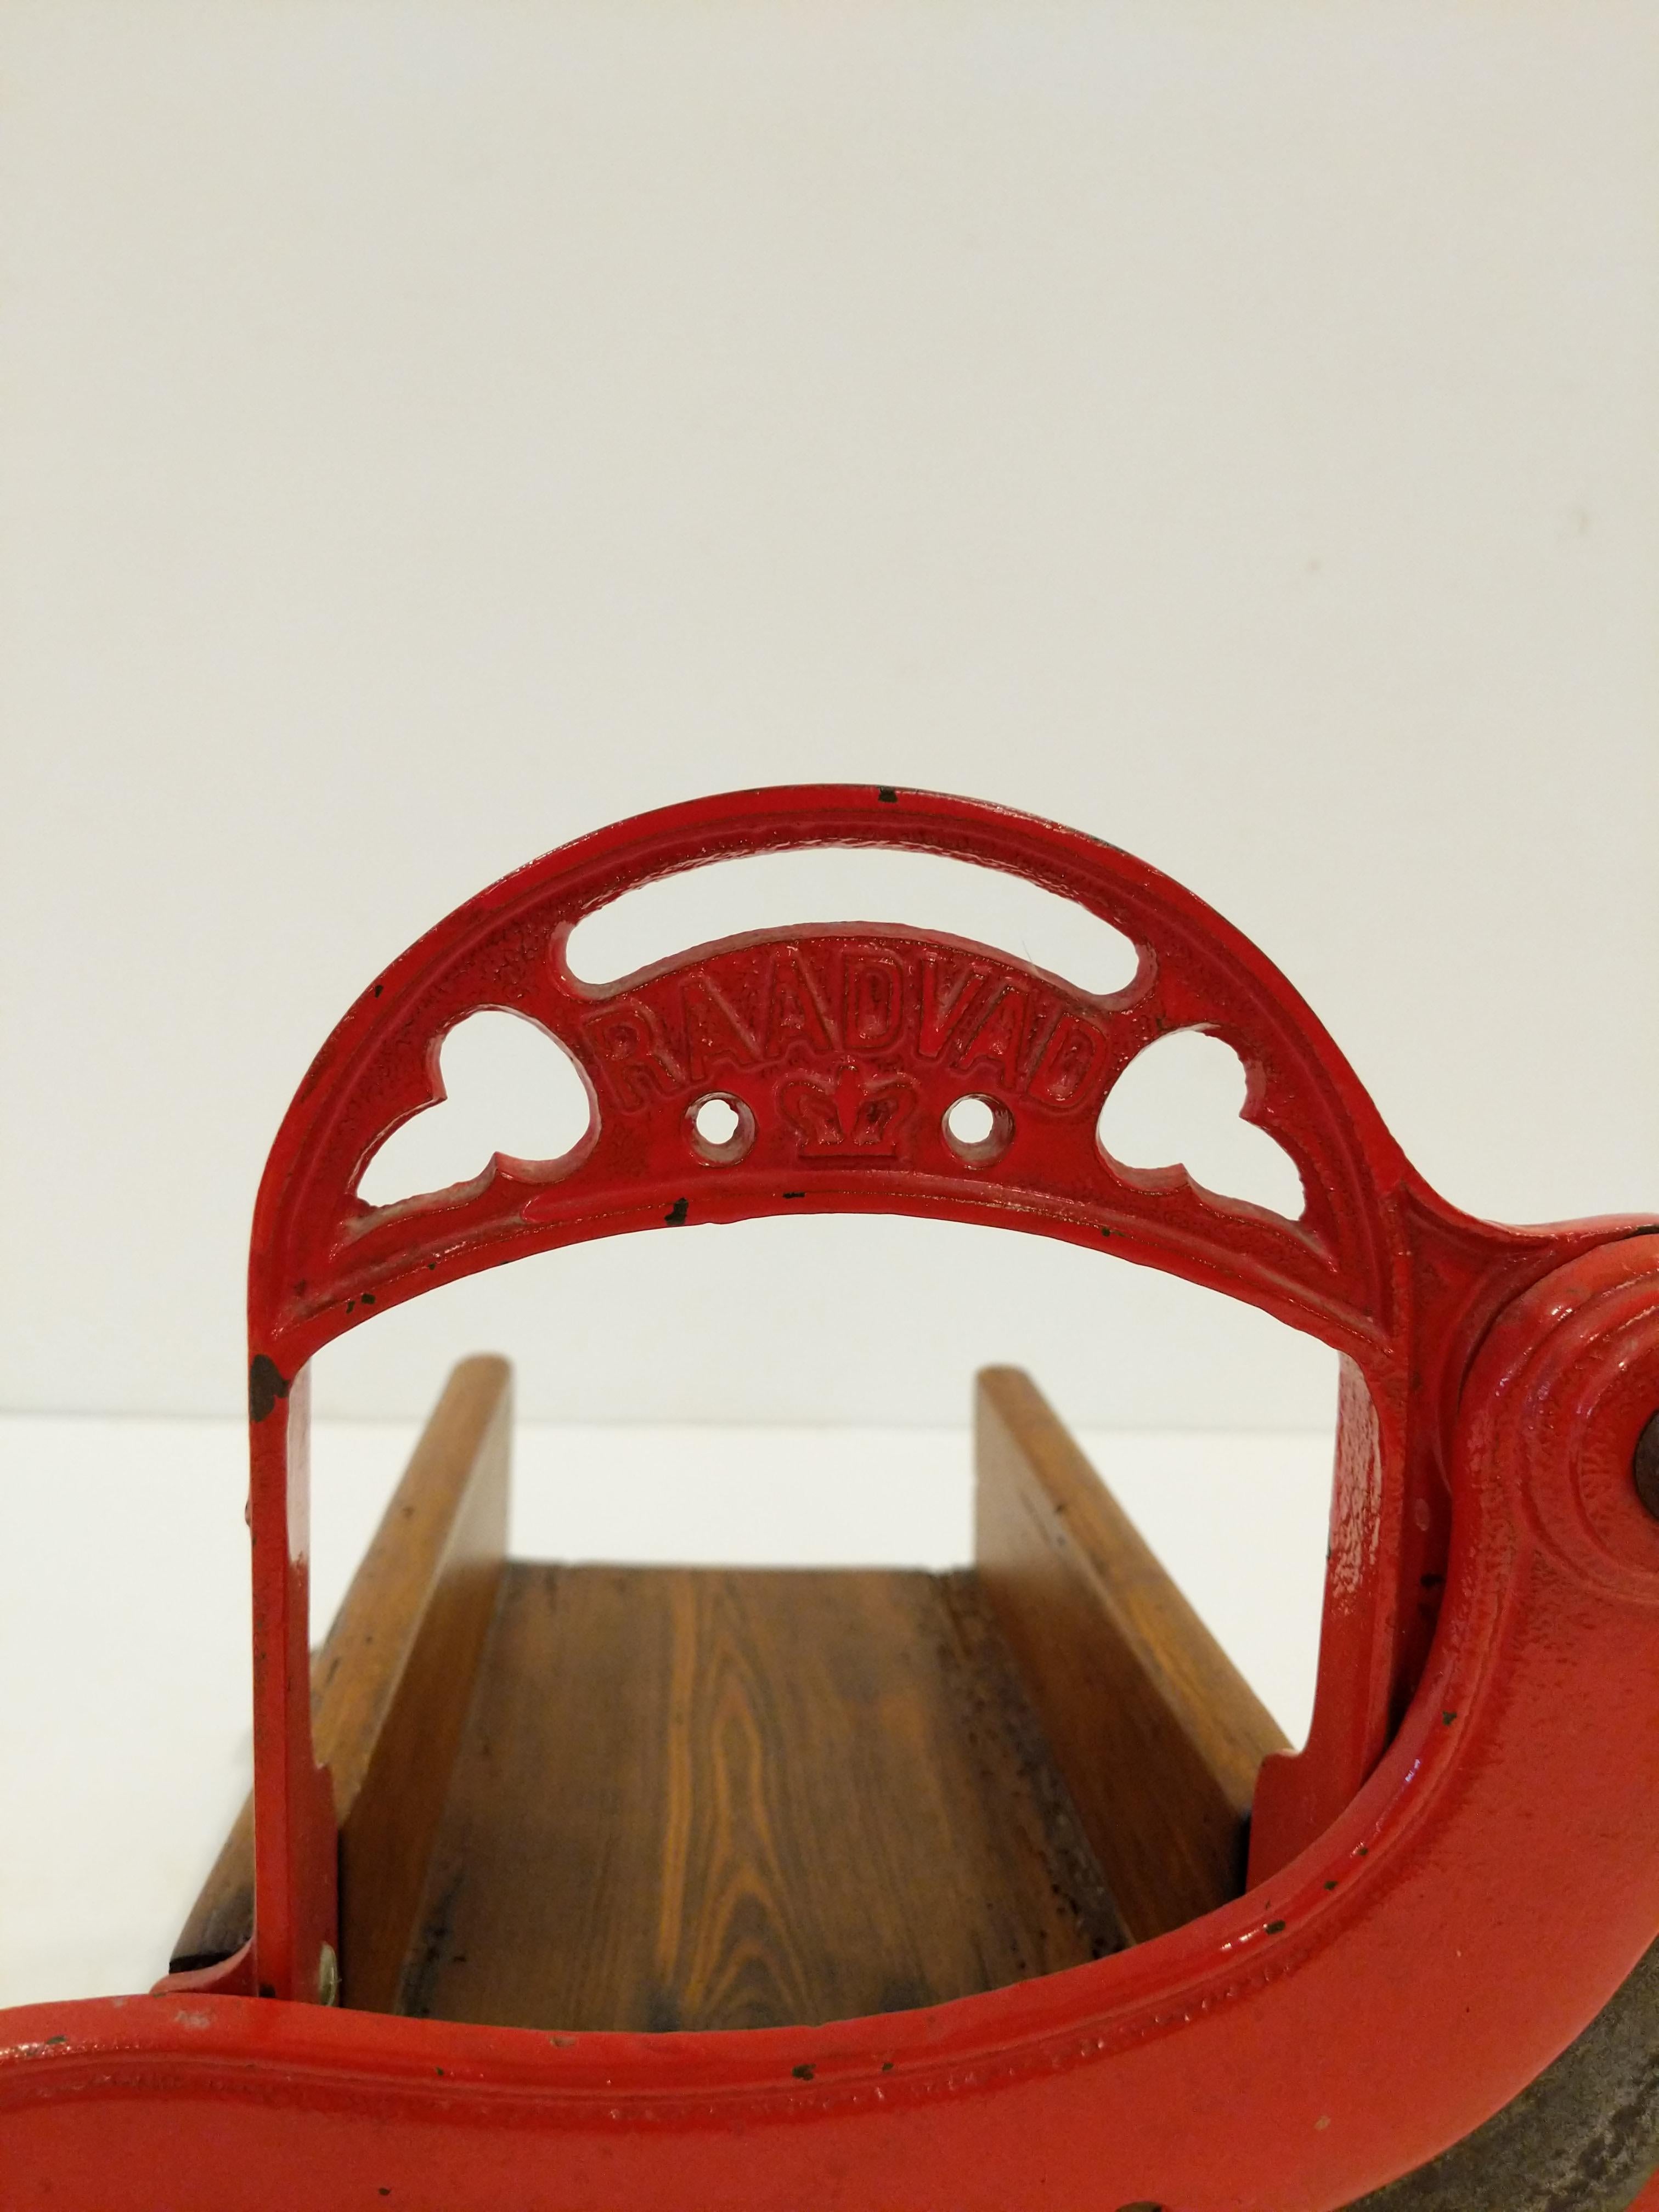 Authentique trancheuse à pain / guillotine danoise ancienne de couleur rouge.

Modèle 4 de Raadvad.

Cette trancheuse est en bon état dans l'ensemble et montre un peu son âge.

Réf : RV27-003